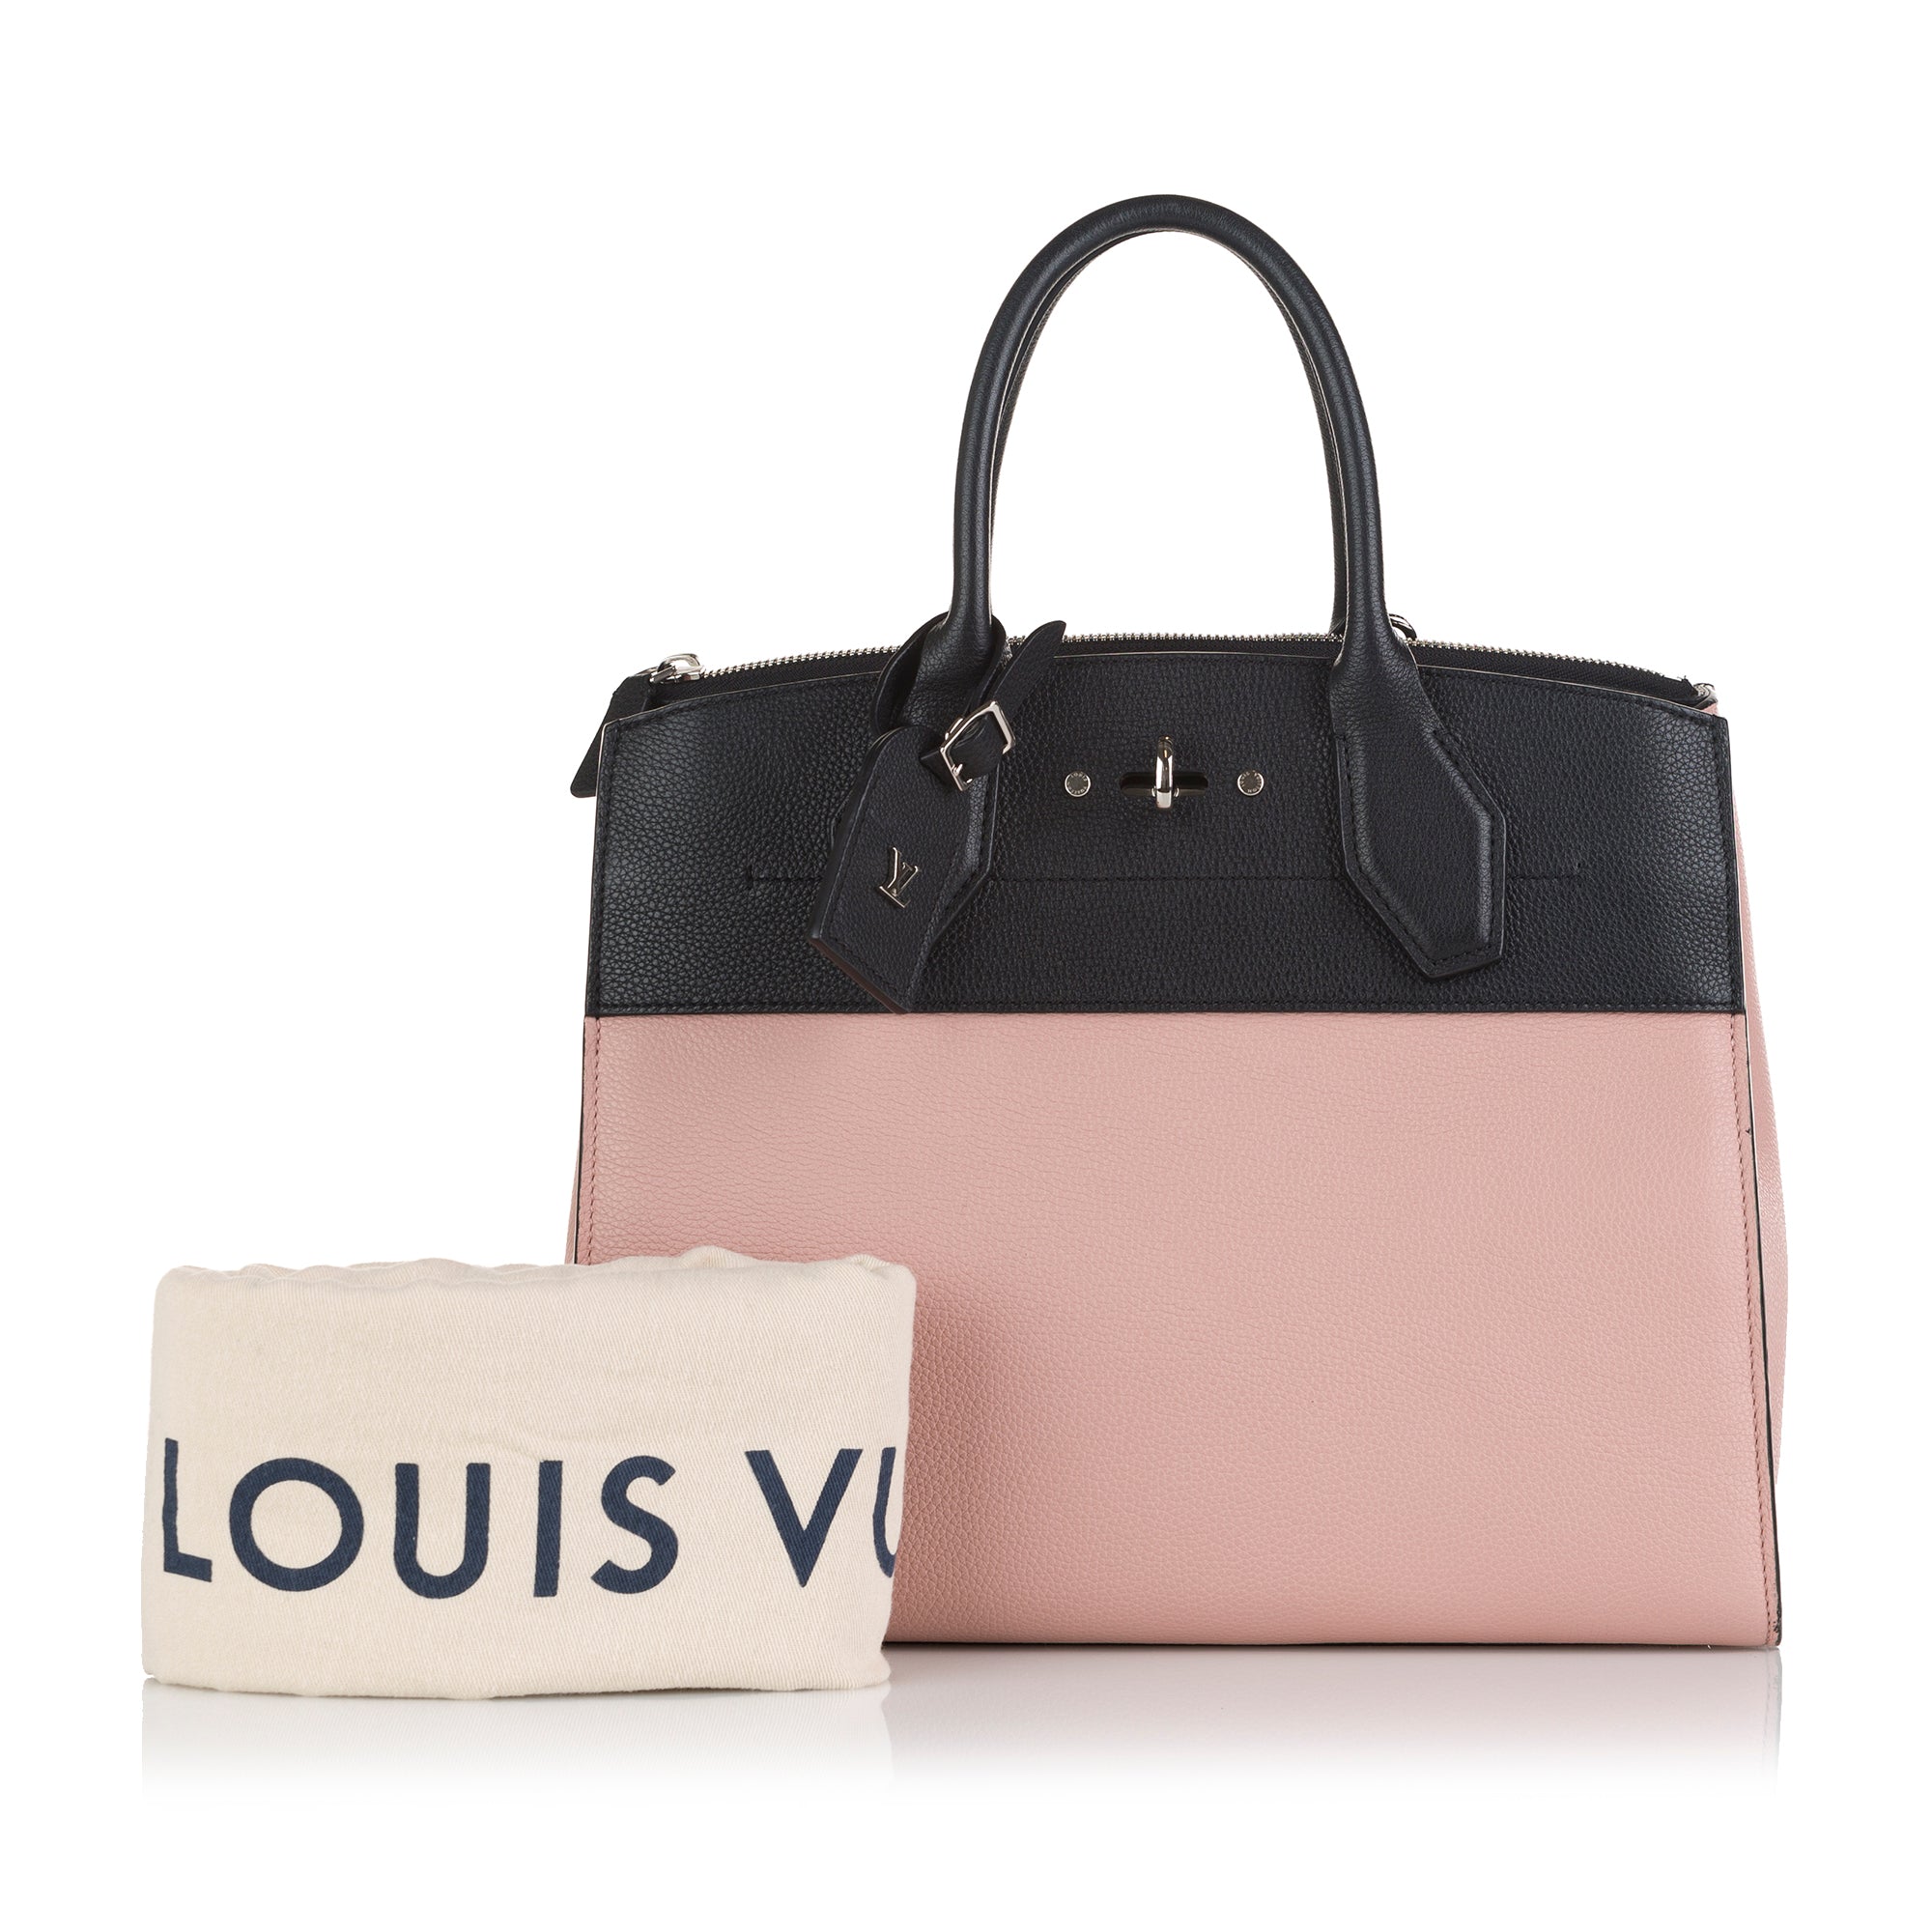 Louis Vuitton City Steamer PM Satchel Bag